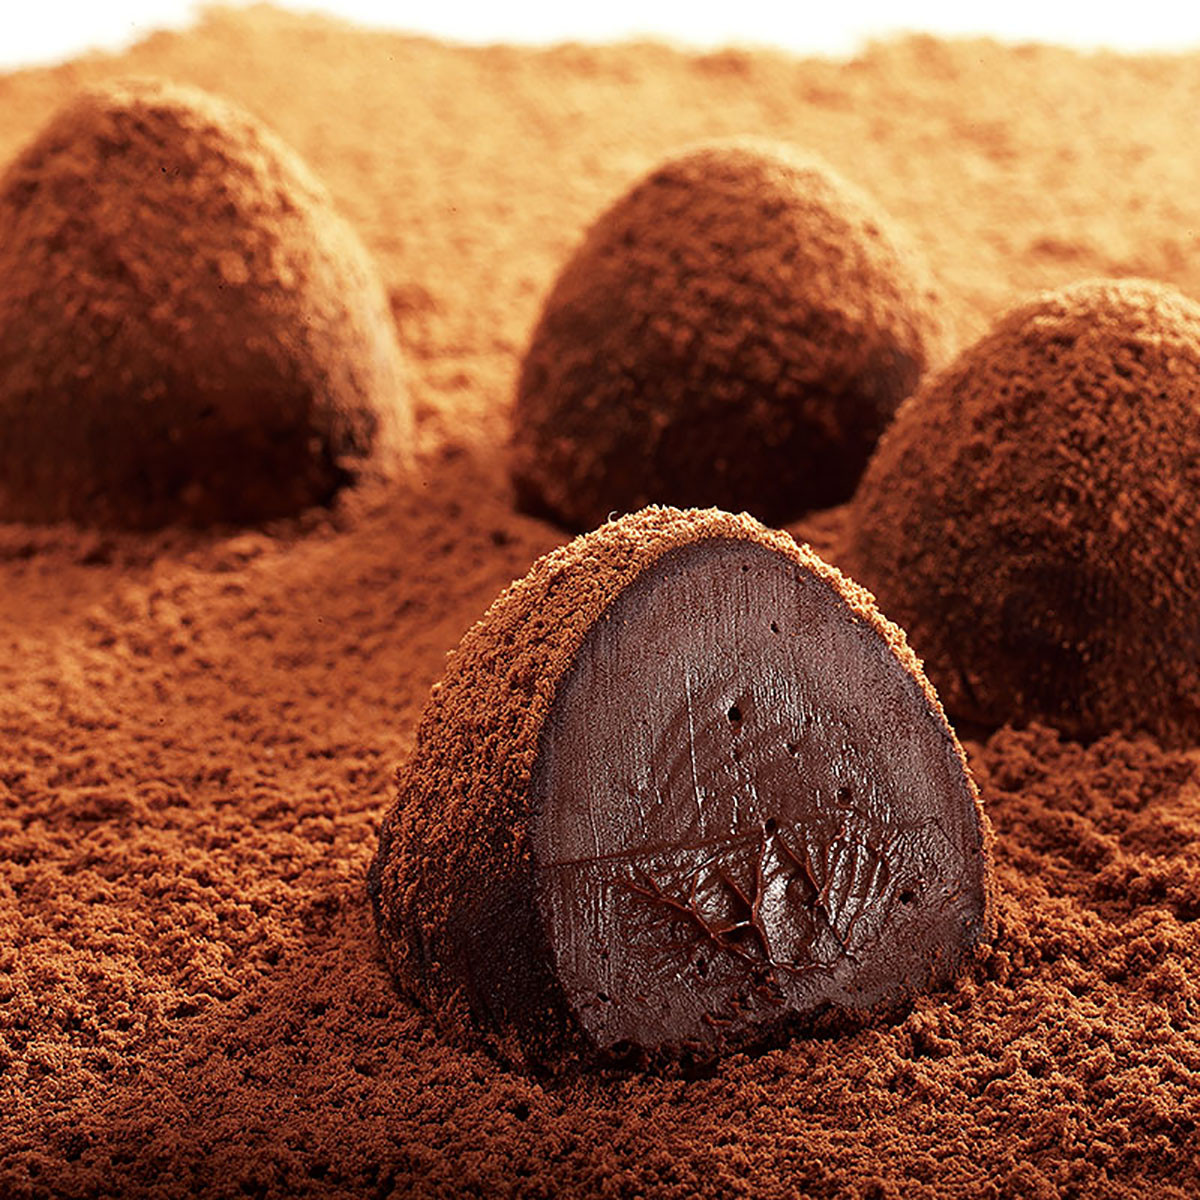 松露巧克力88g 松露黑巧克力 巧克力礼盒 巧克力丝滑 巧克力 巧克力